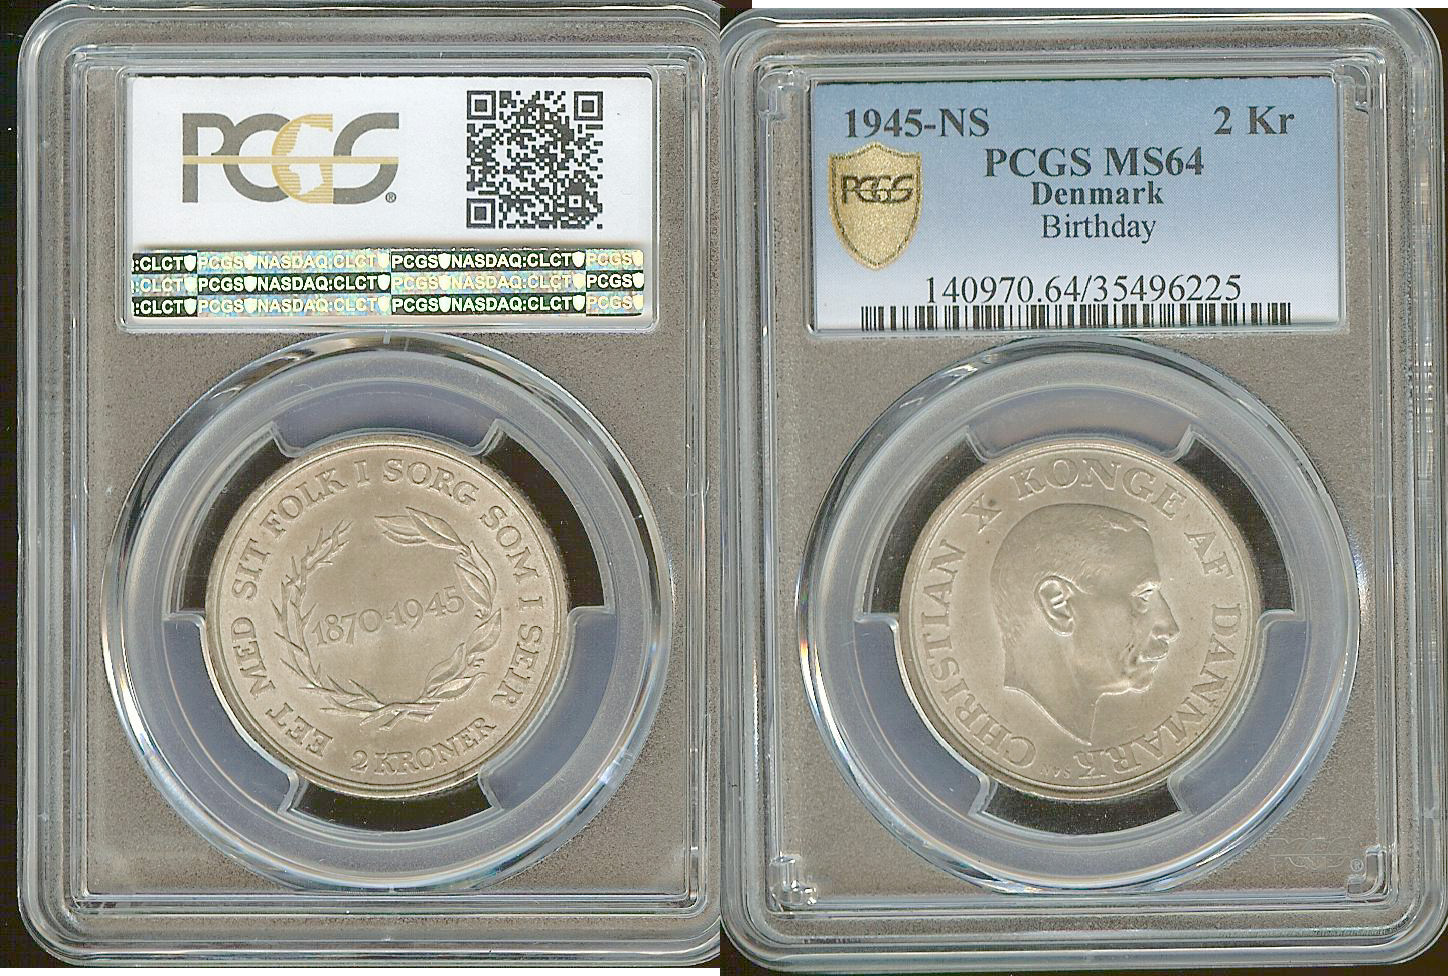 Denamrk 2 kroner 1945NS PCGS MS64